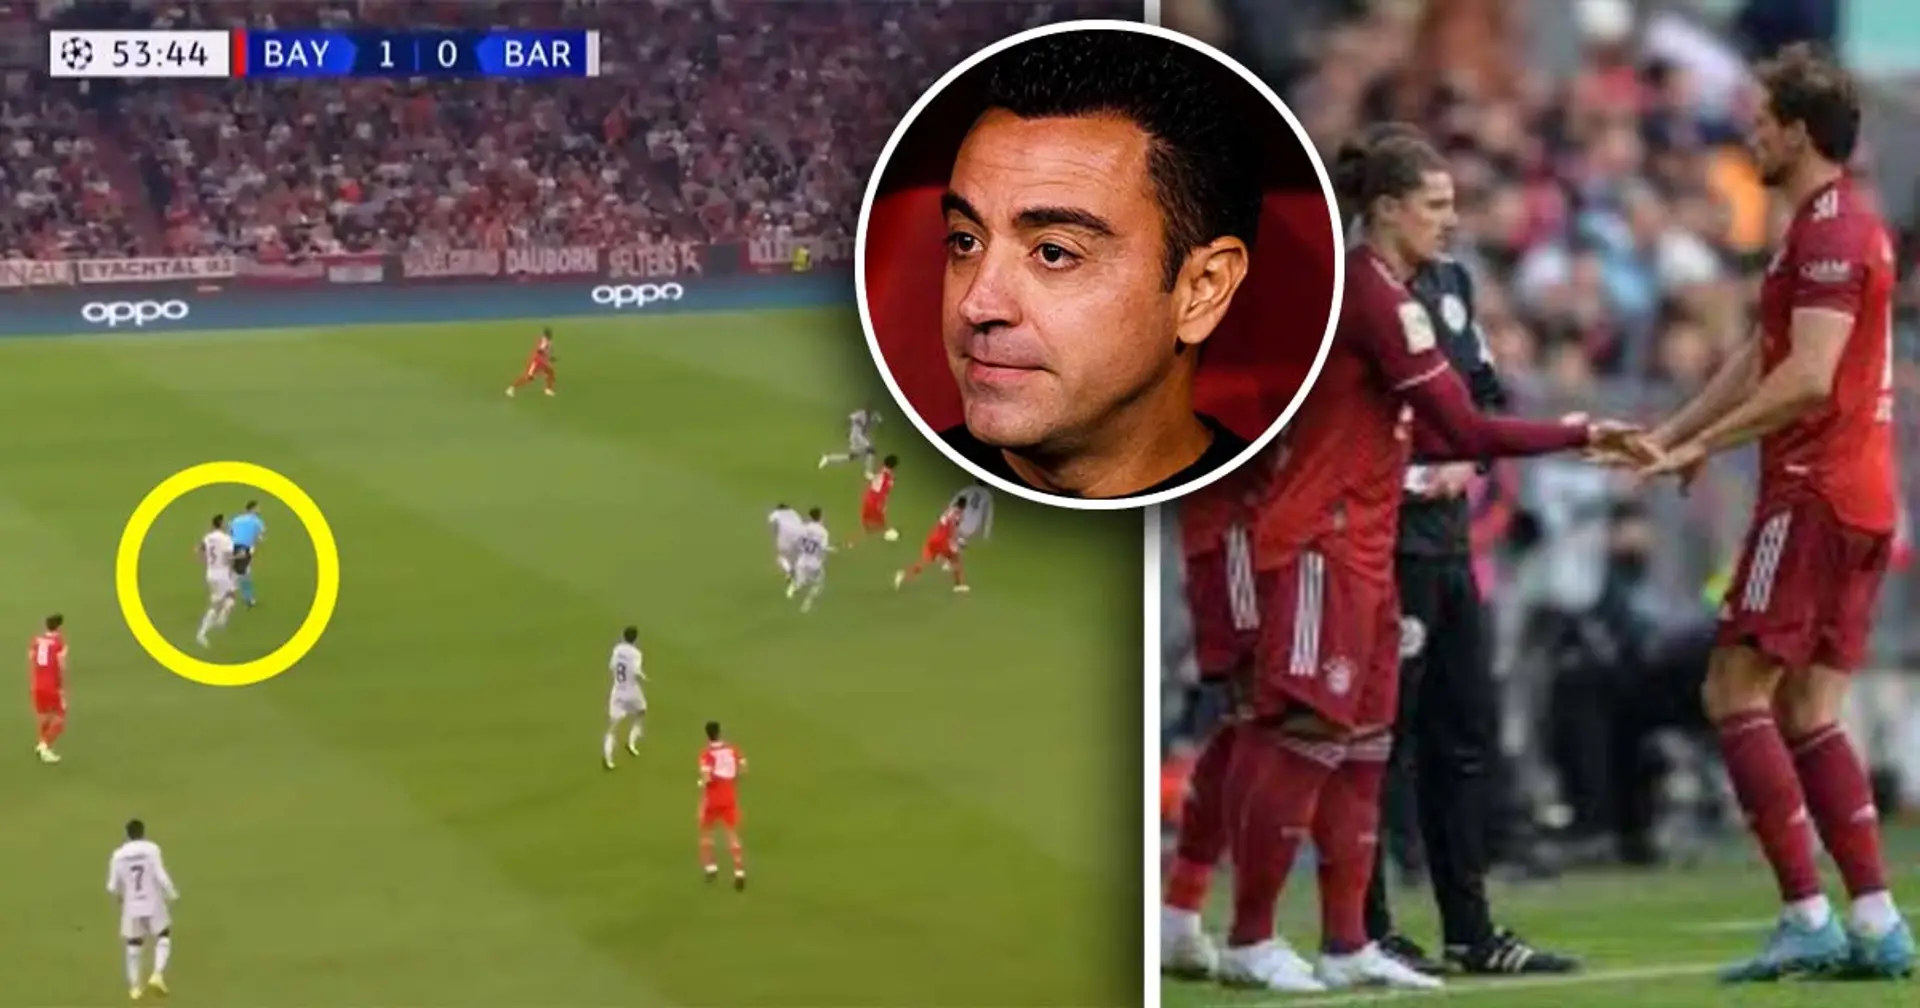 Un fan révèle un mauvais choix tactique de Xavi lors de la défaite contre le Bayern - c'est pourquoi le Barça a pris l'initiative tardivement